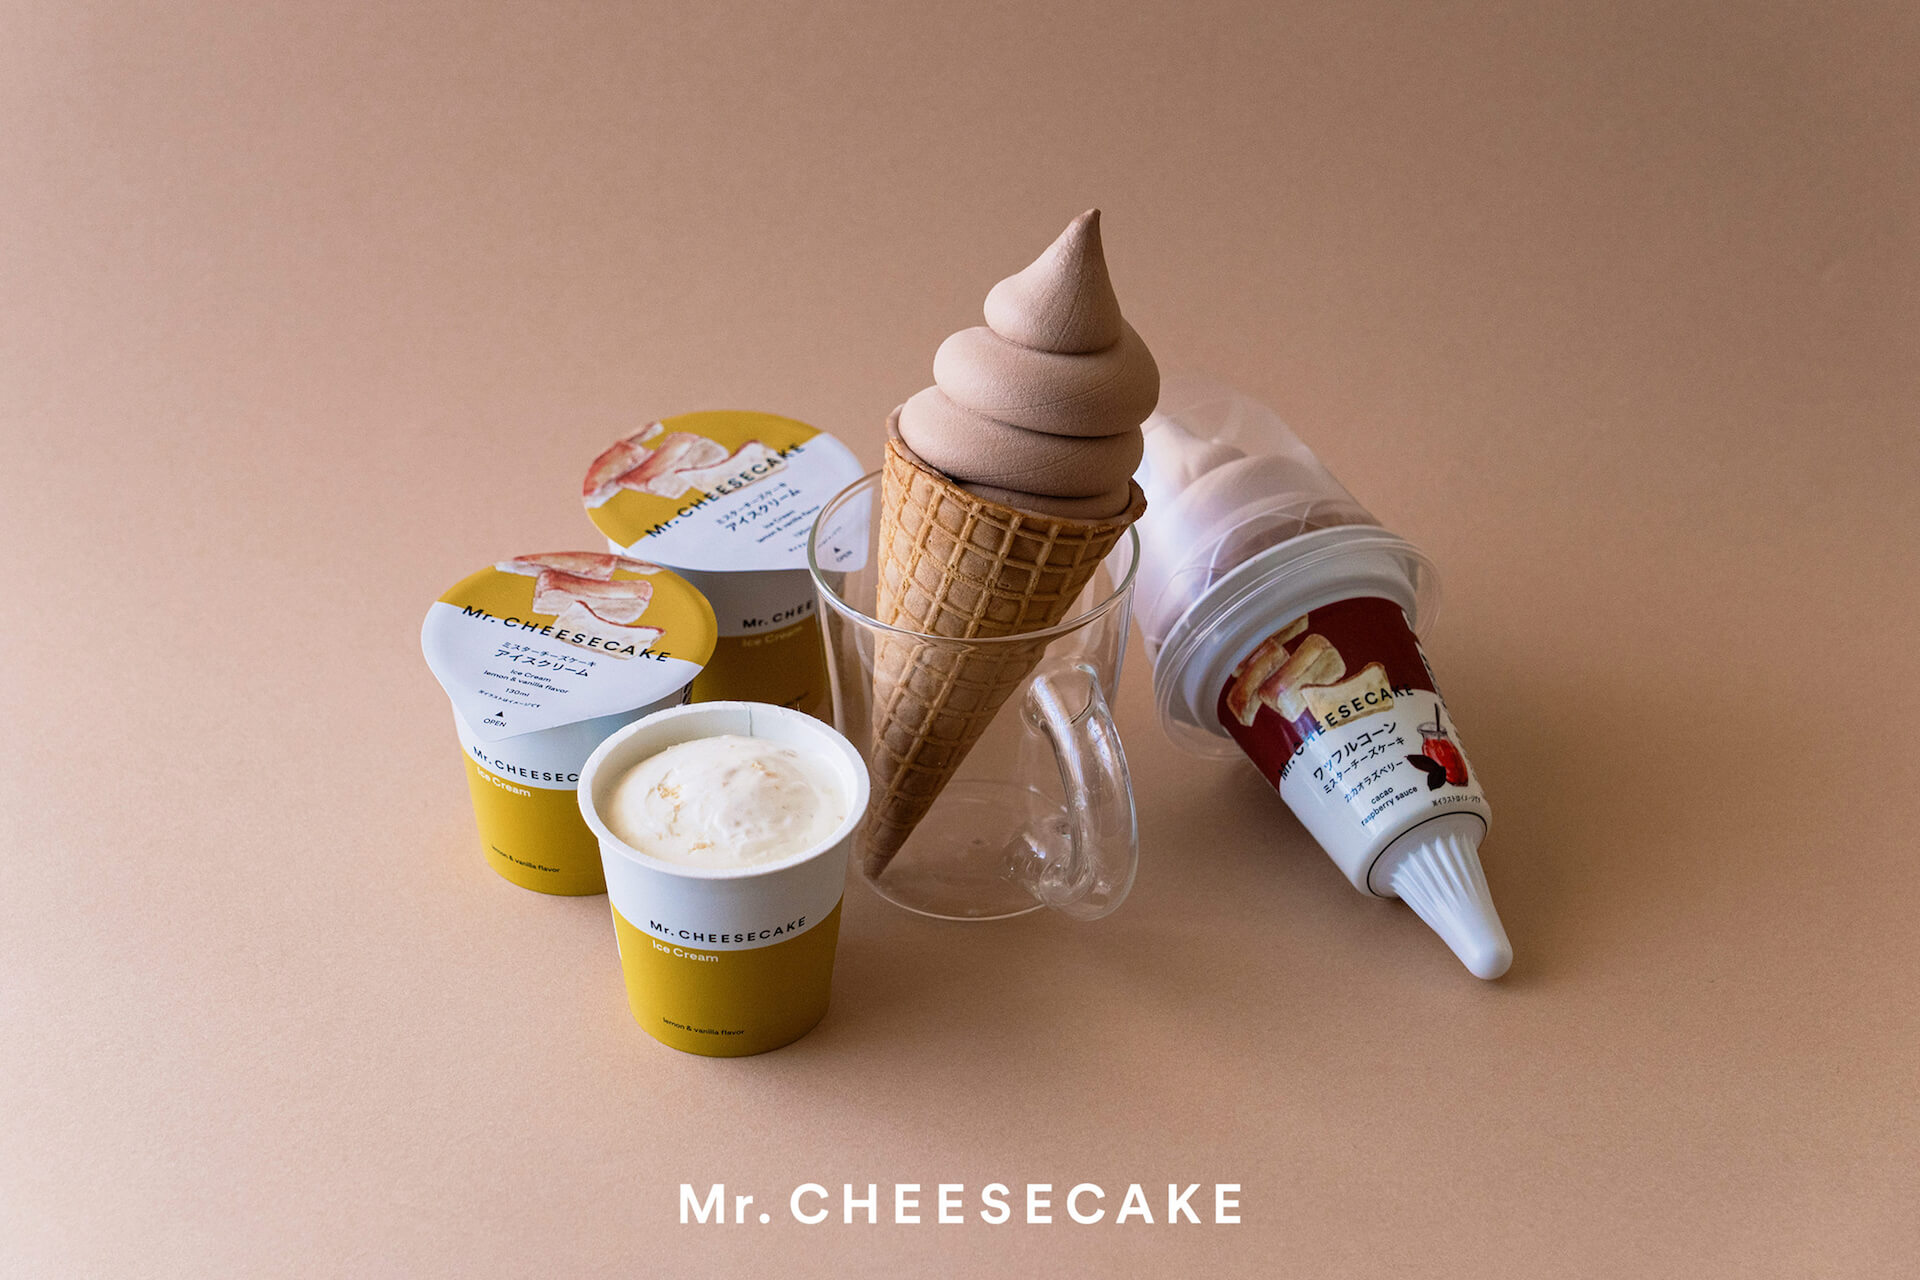 超濃厚チーズケーキでおなじみのmr Cheesecakeとセブン イレブンのコラボが実現 ミスターチーズケーキ アイスクリーム など2種類登場 Qetic